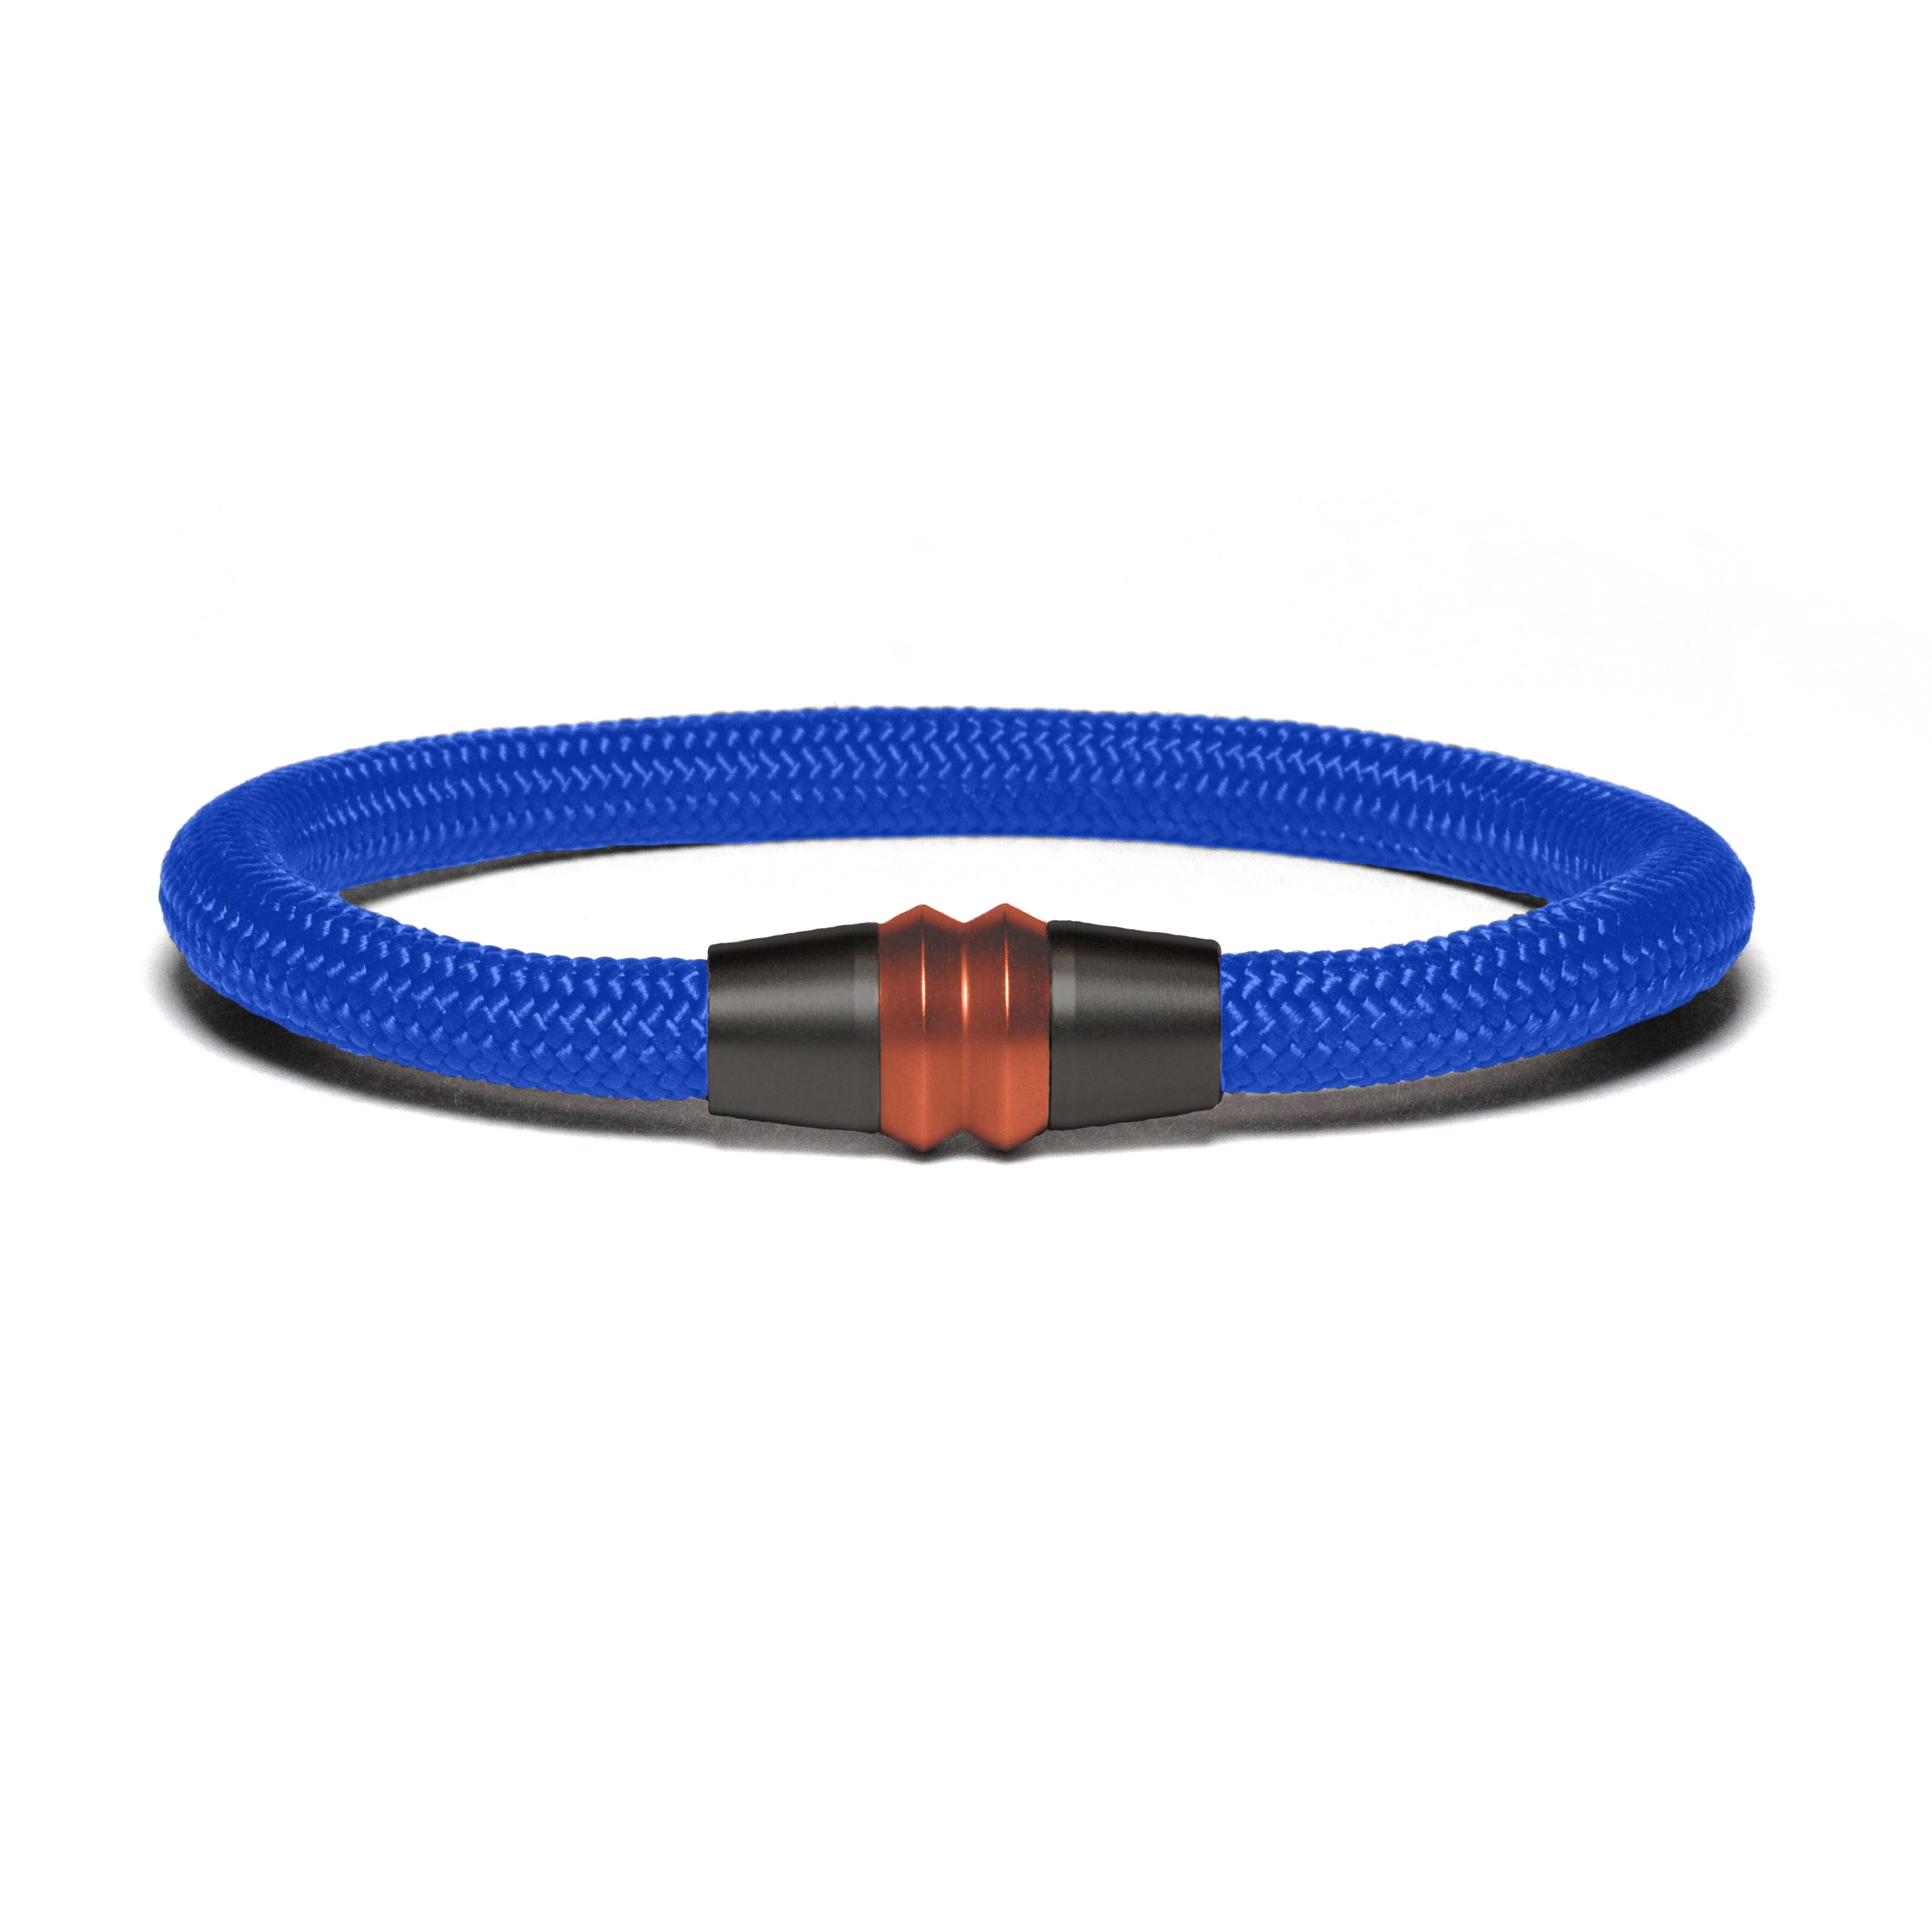 Black PVD bracelet - blue paracord